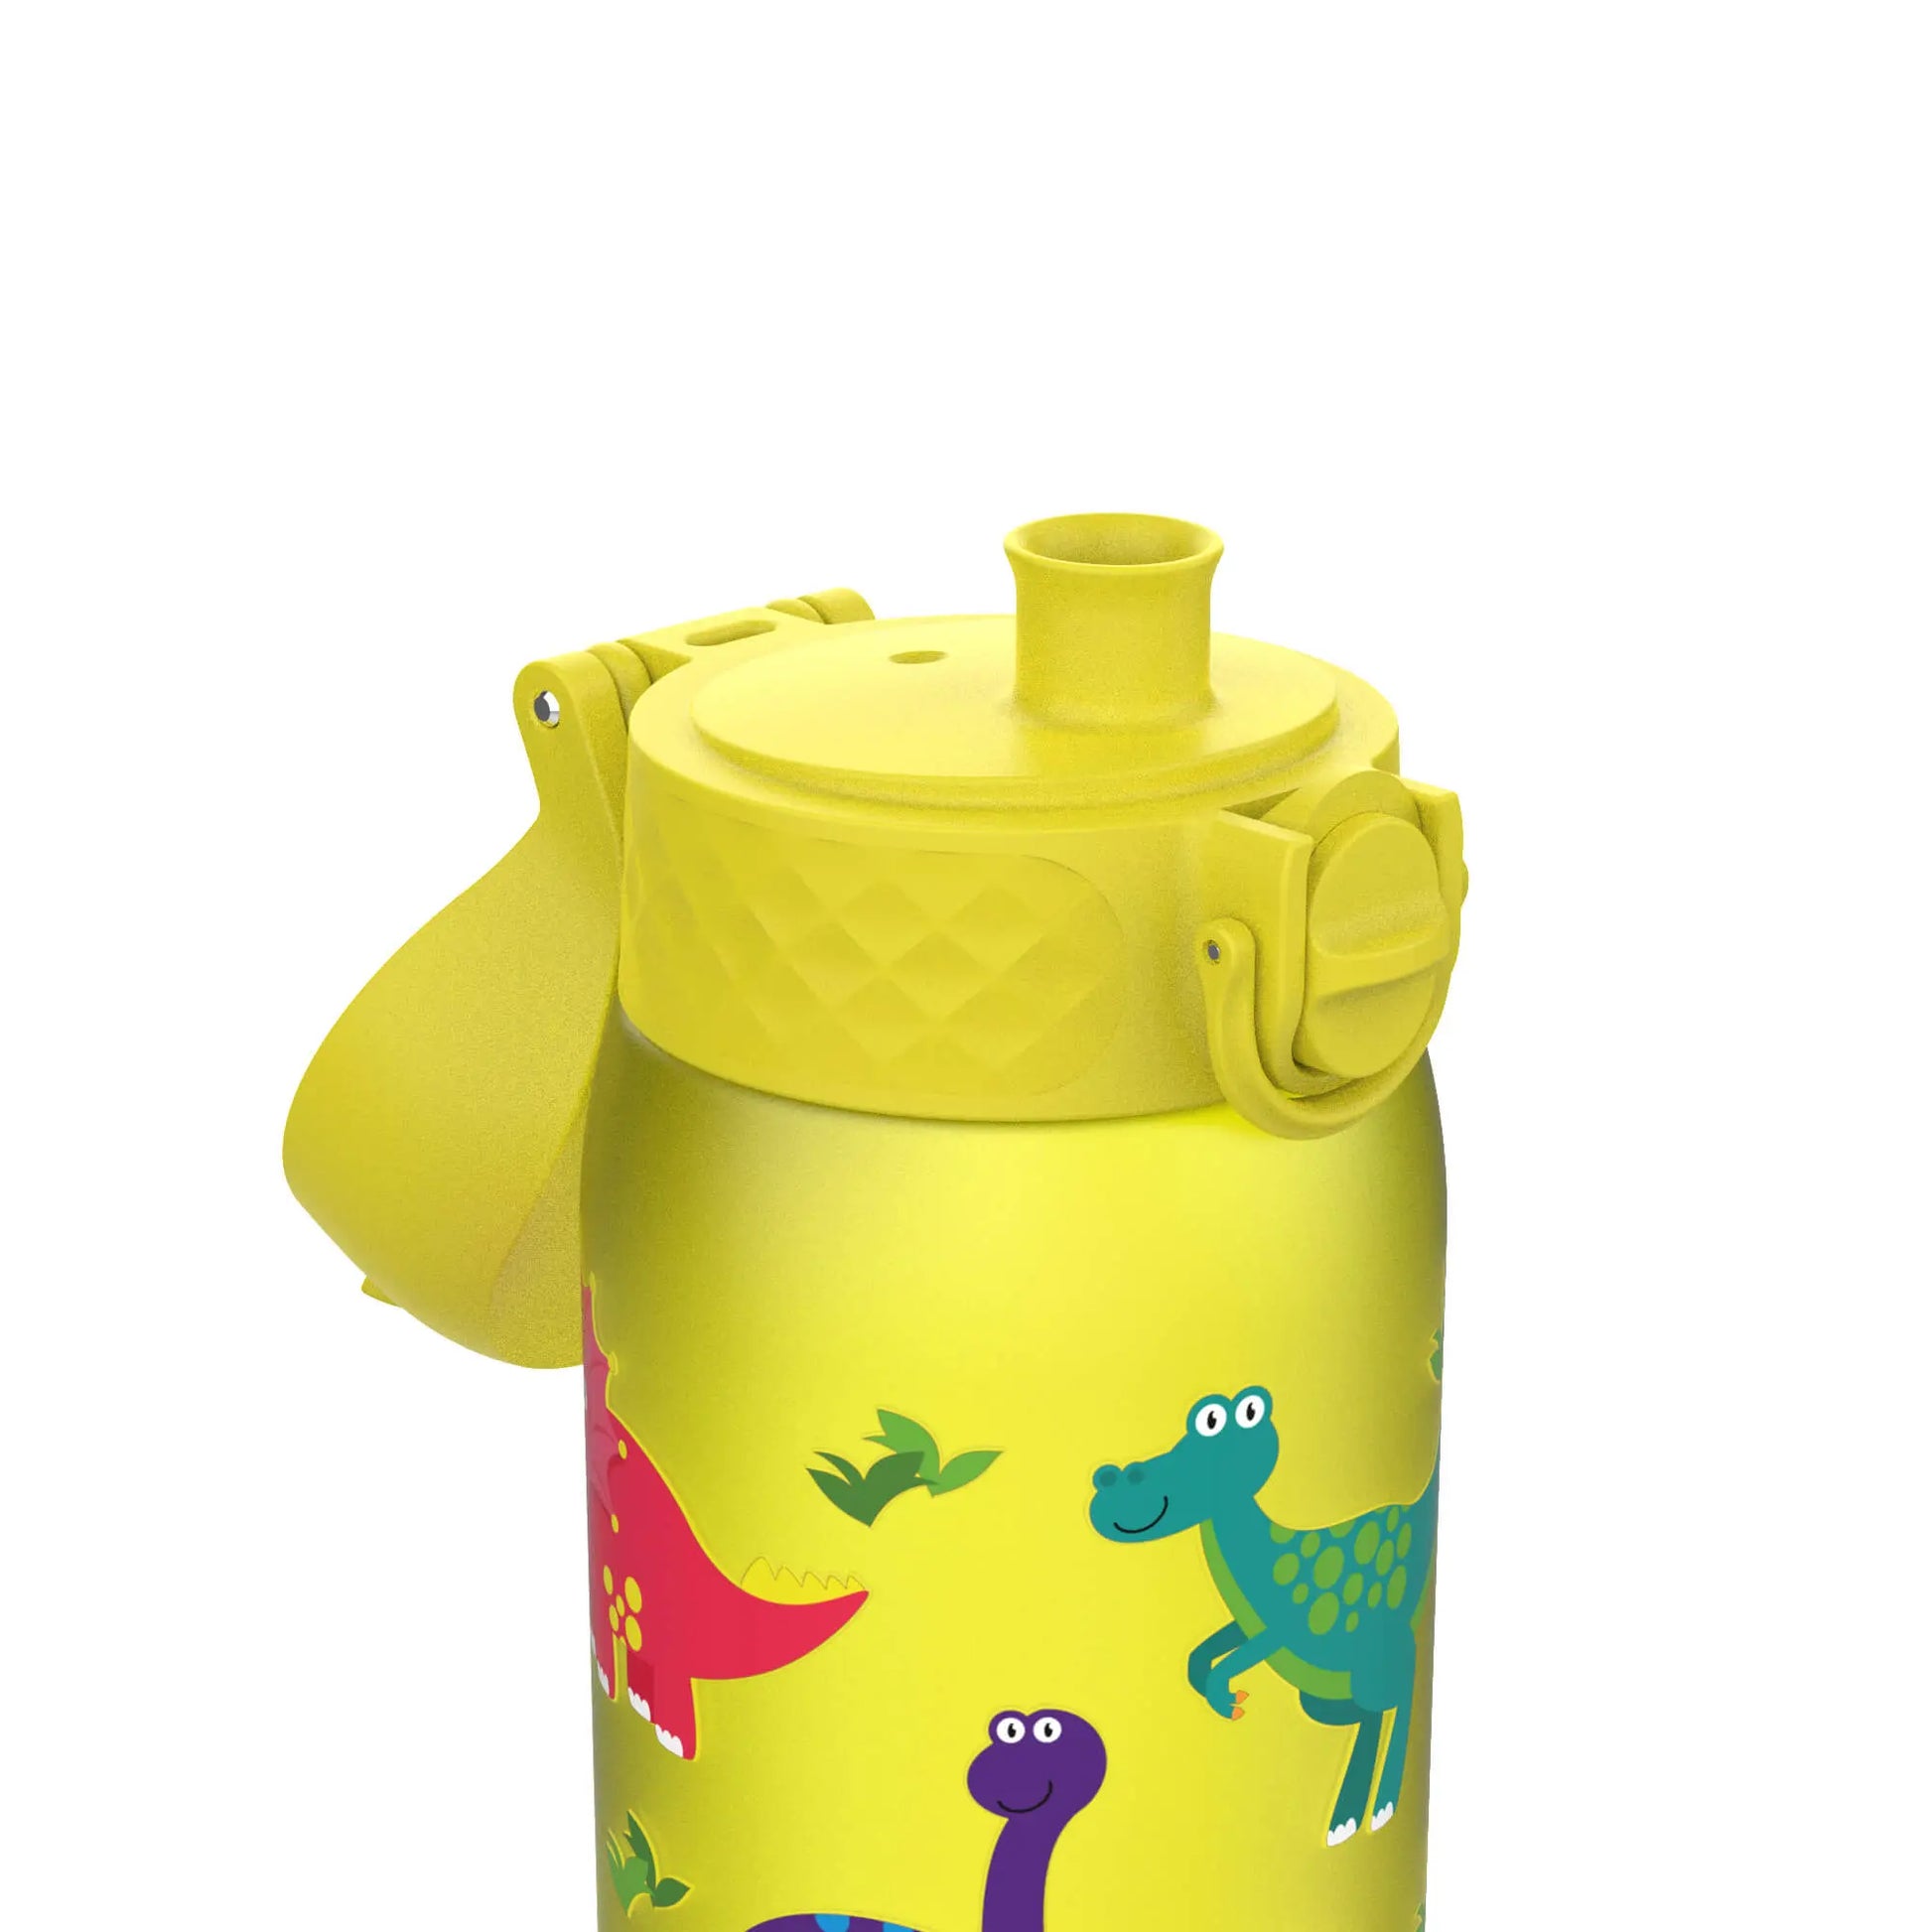 Leak Proof Kids Water Bottle, Recyclon™, Dinosaur, 350ml (12oz) Ion8